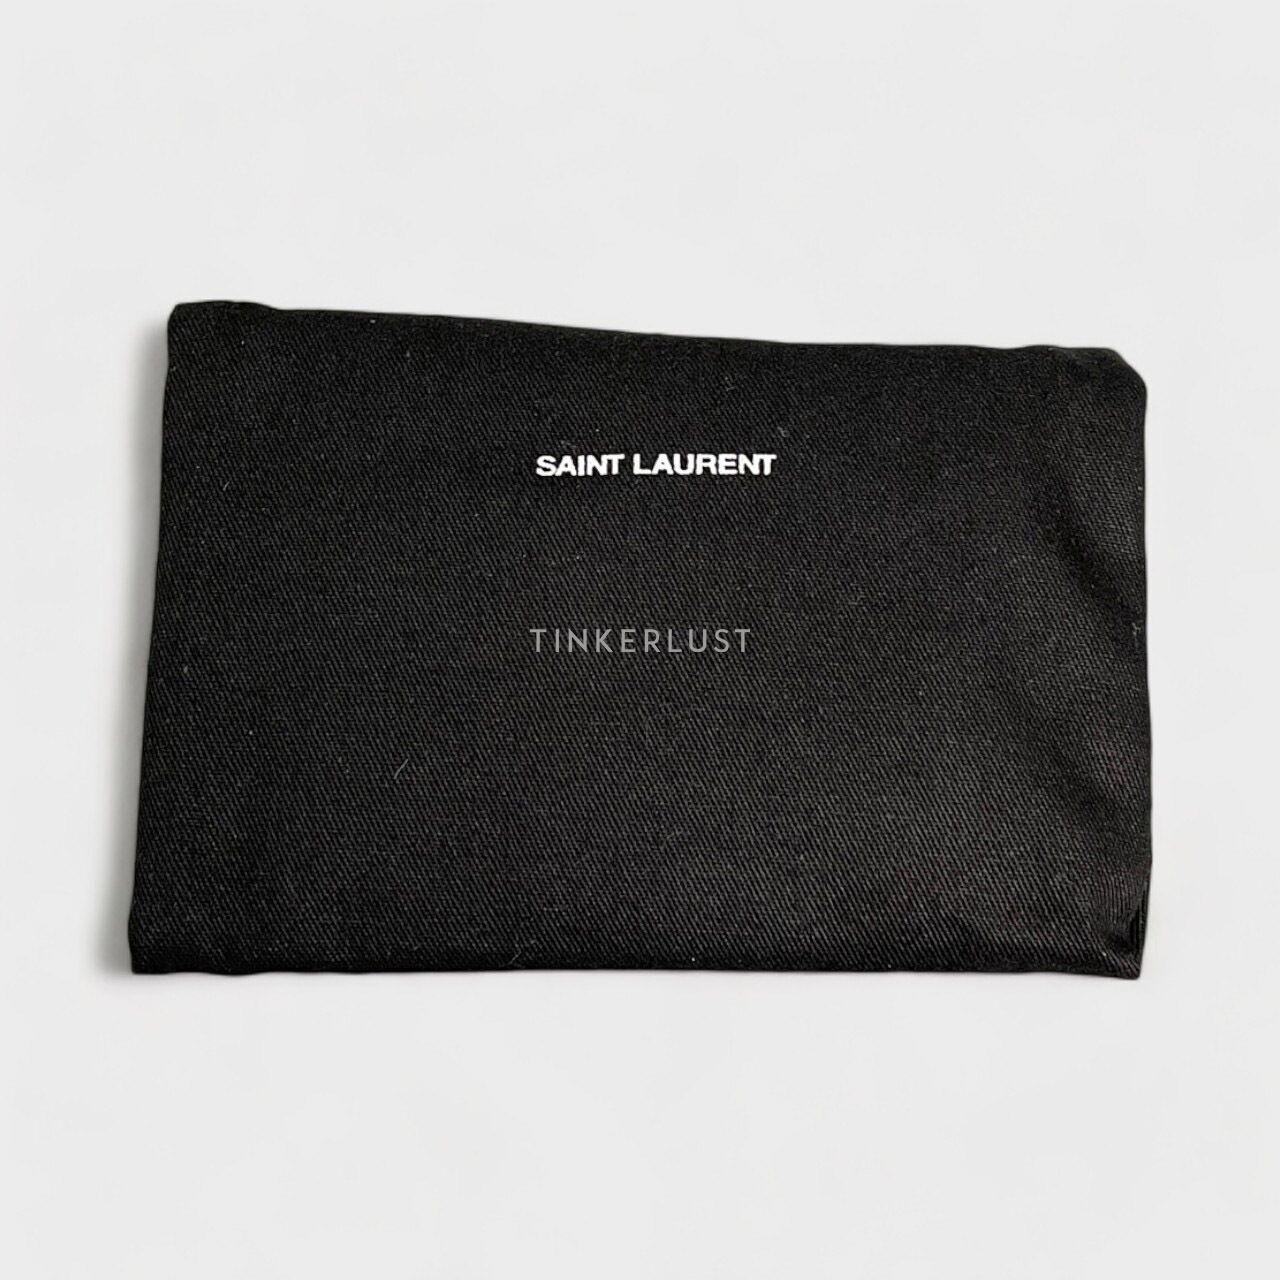 Yves Saint Laurent Black Grain Leather Card Holder